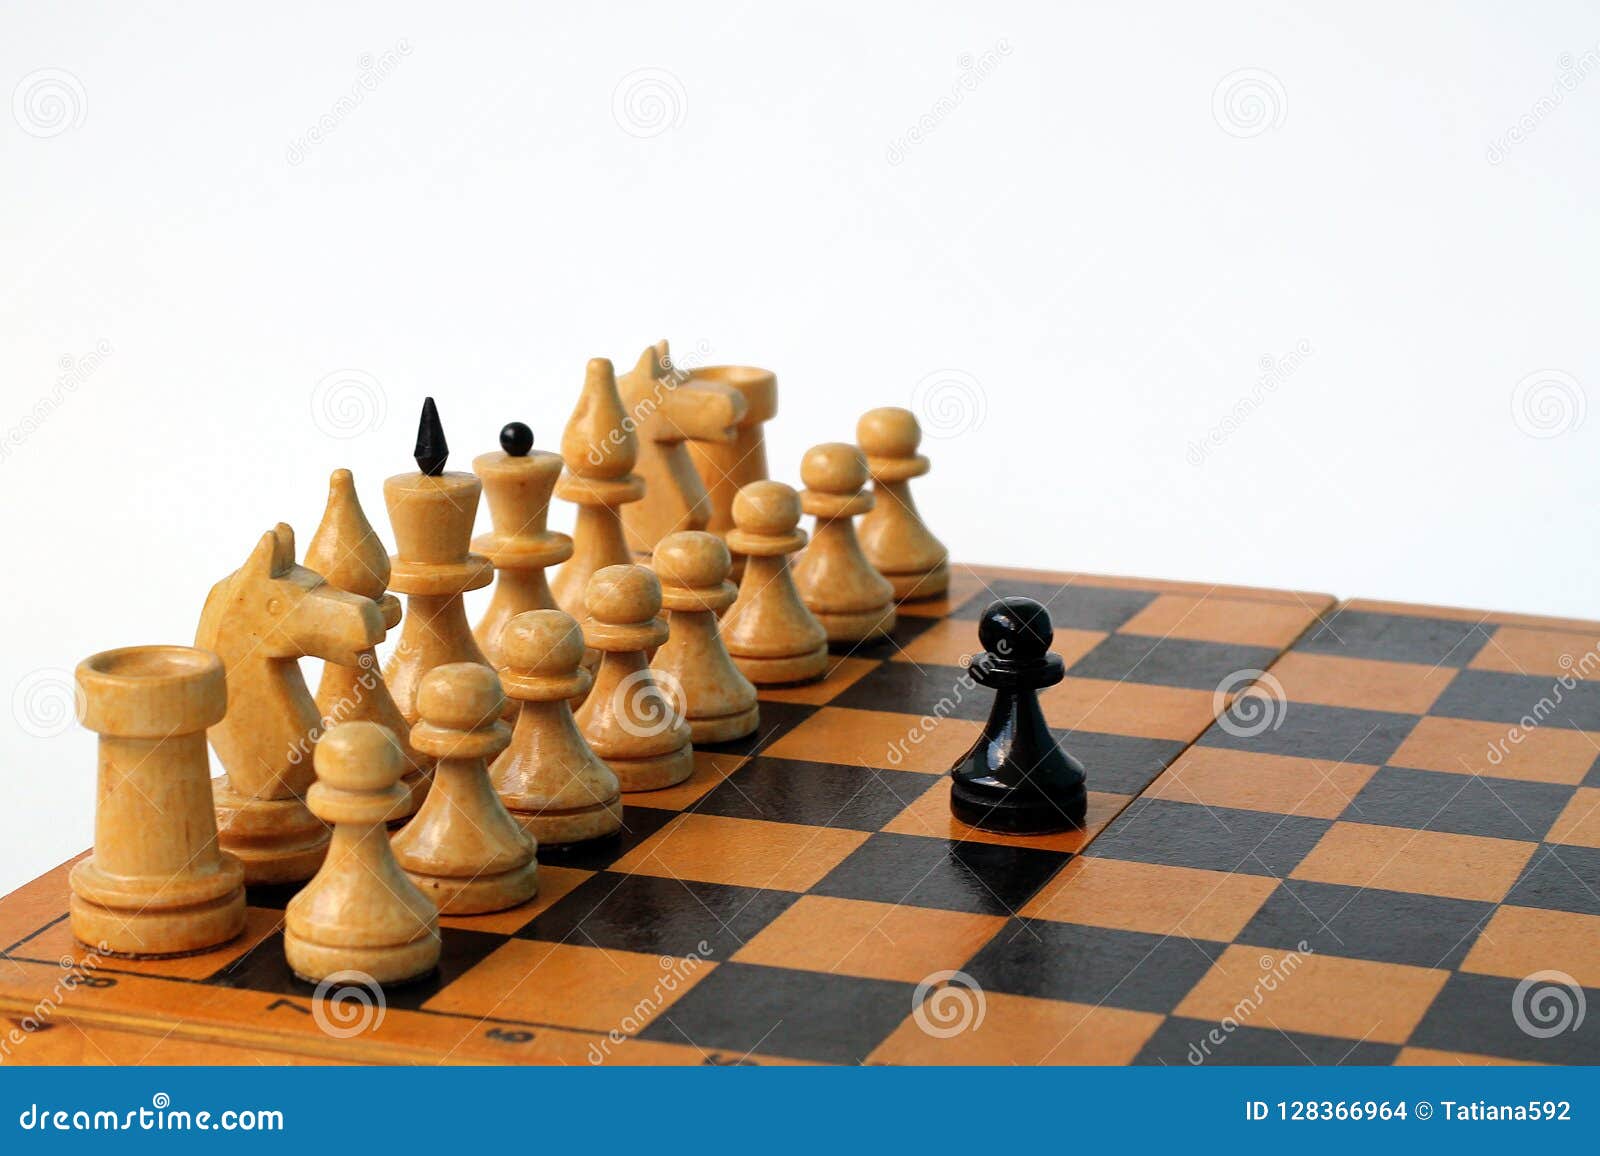 На шахматной доске осталось 5 белых фигур. Расстановка шахматных фигур Король и ферзь на доске. Шахматные фигуры ферзь Король на доске. Белый Король на шахматной доске. Как выглядит Король на шахматной доске.